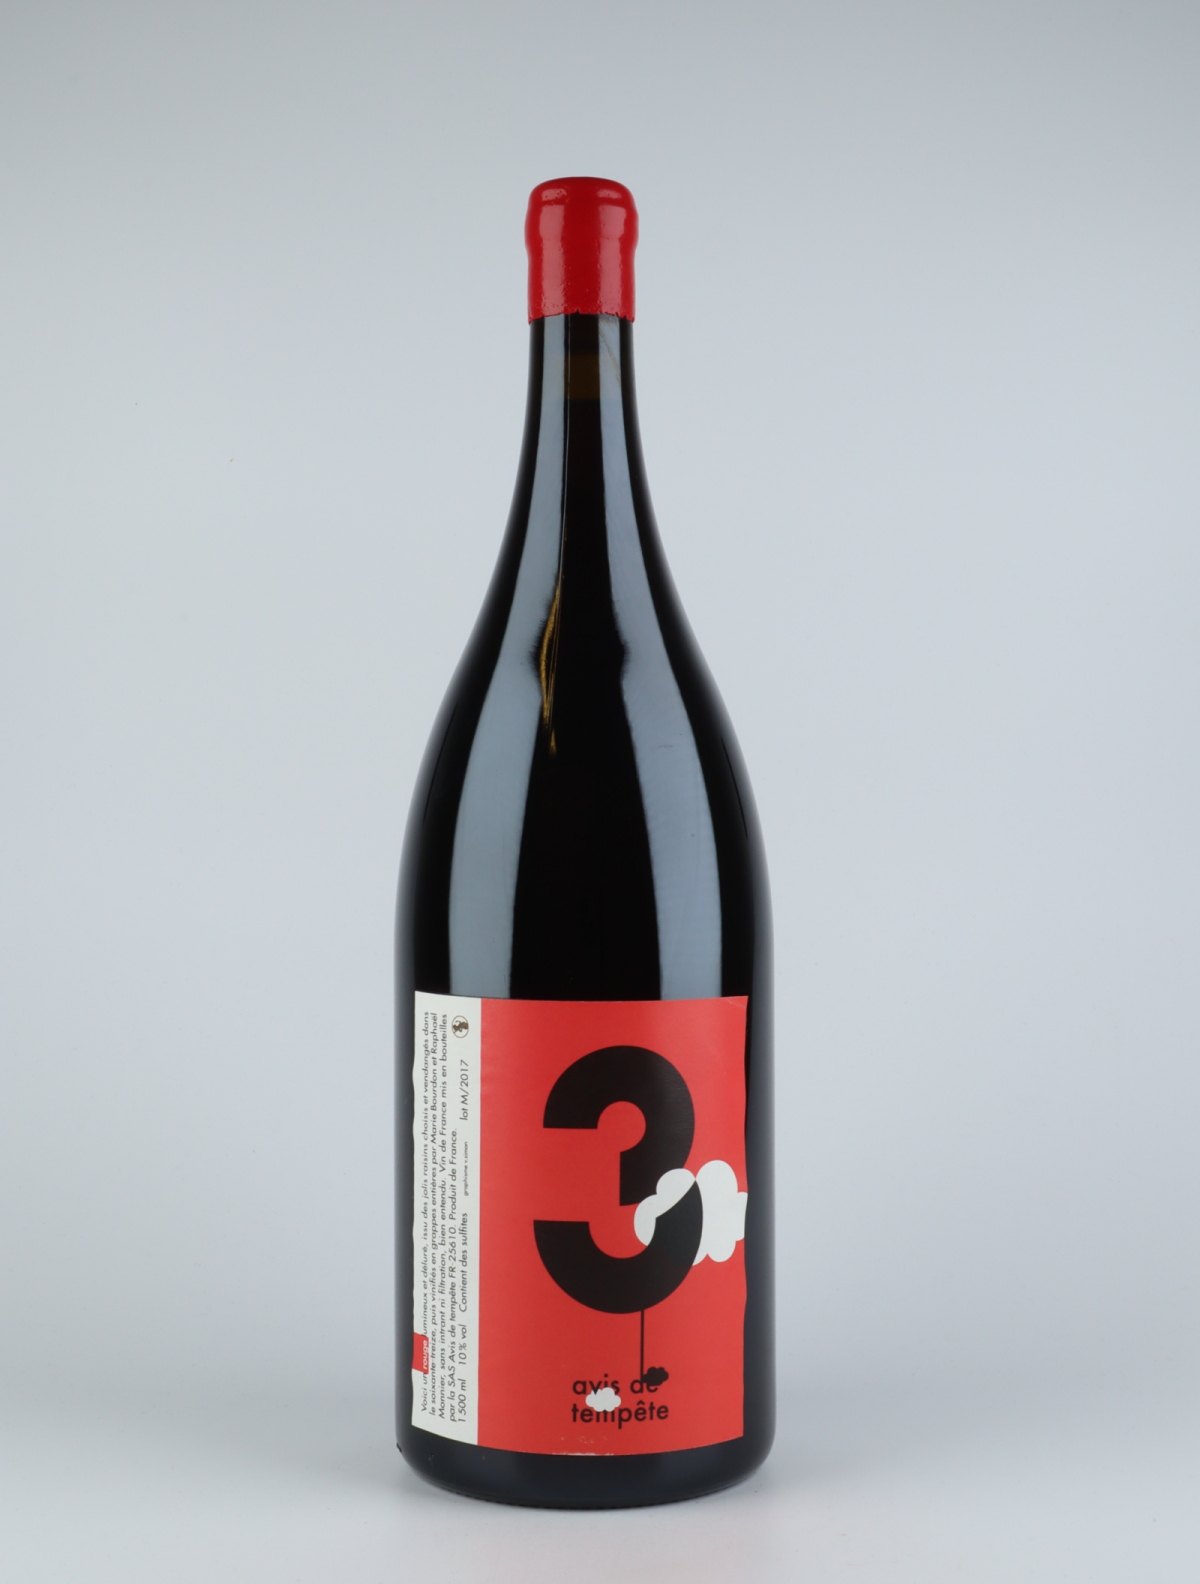 En flaske 2017 Mondeuse nr. 3 Rødvin fra Avis de Tempete, Savoie i Frankrig